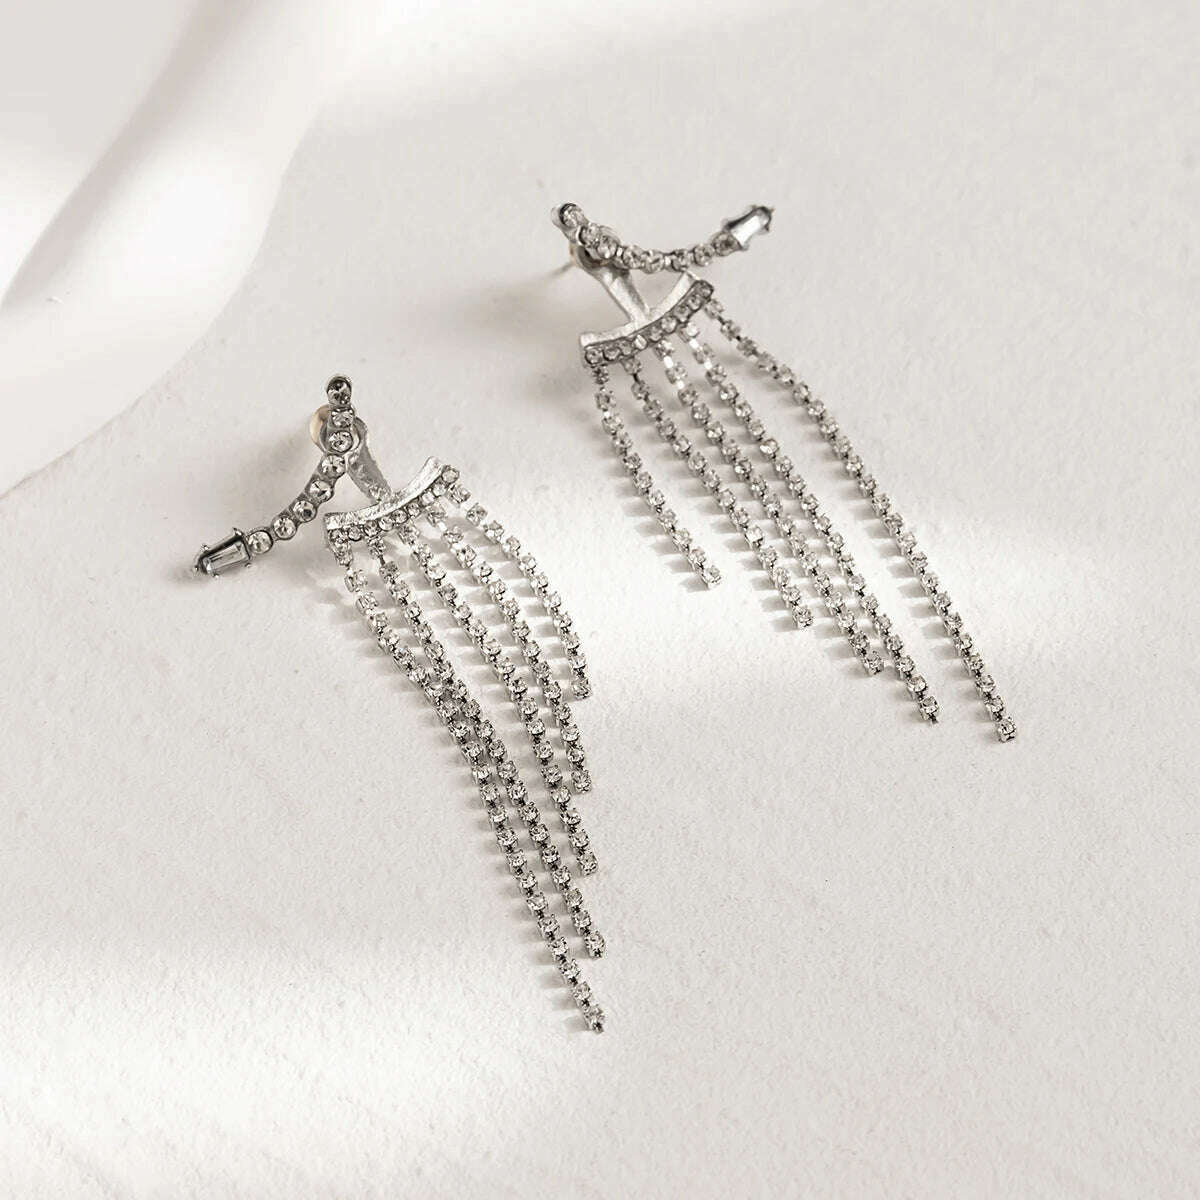 KIMLUD, Korean Full Rhinestone Long Tassel Drop Earrings for Women Exquisite Luxury Zircon Crystal Earrings female Jewelry Wholesale, KIMLUD Women's Clothes